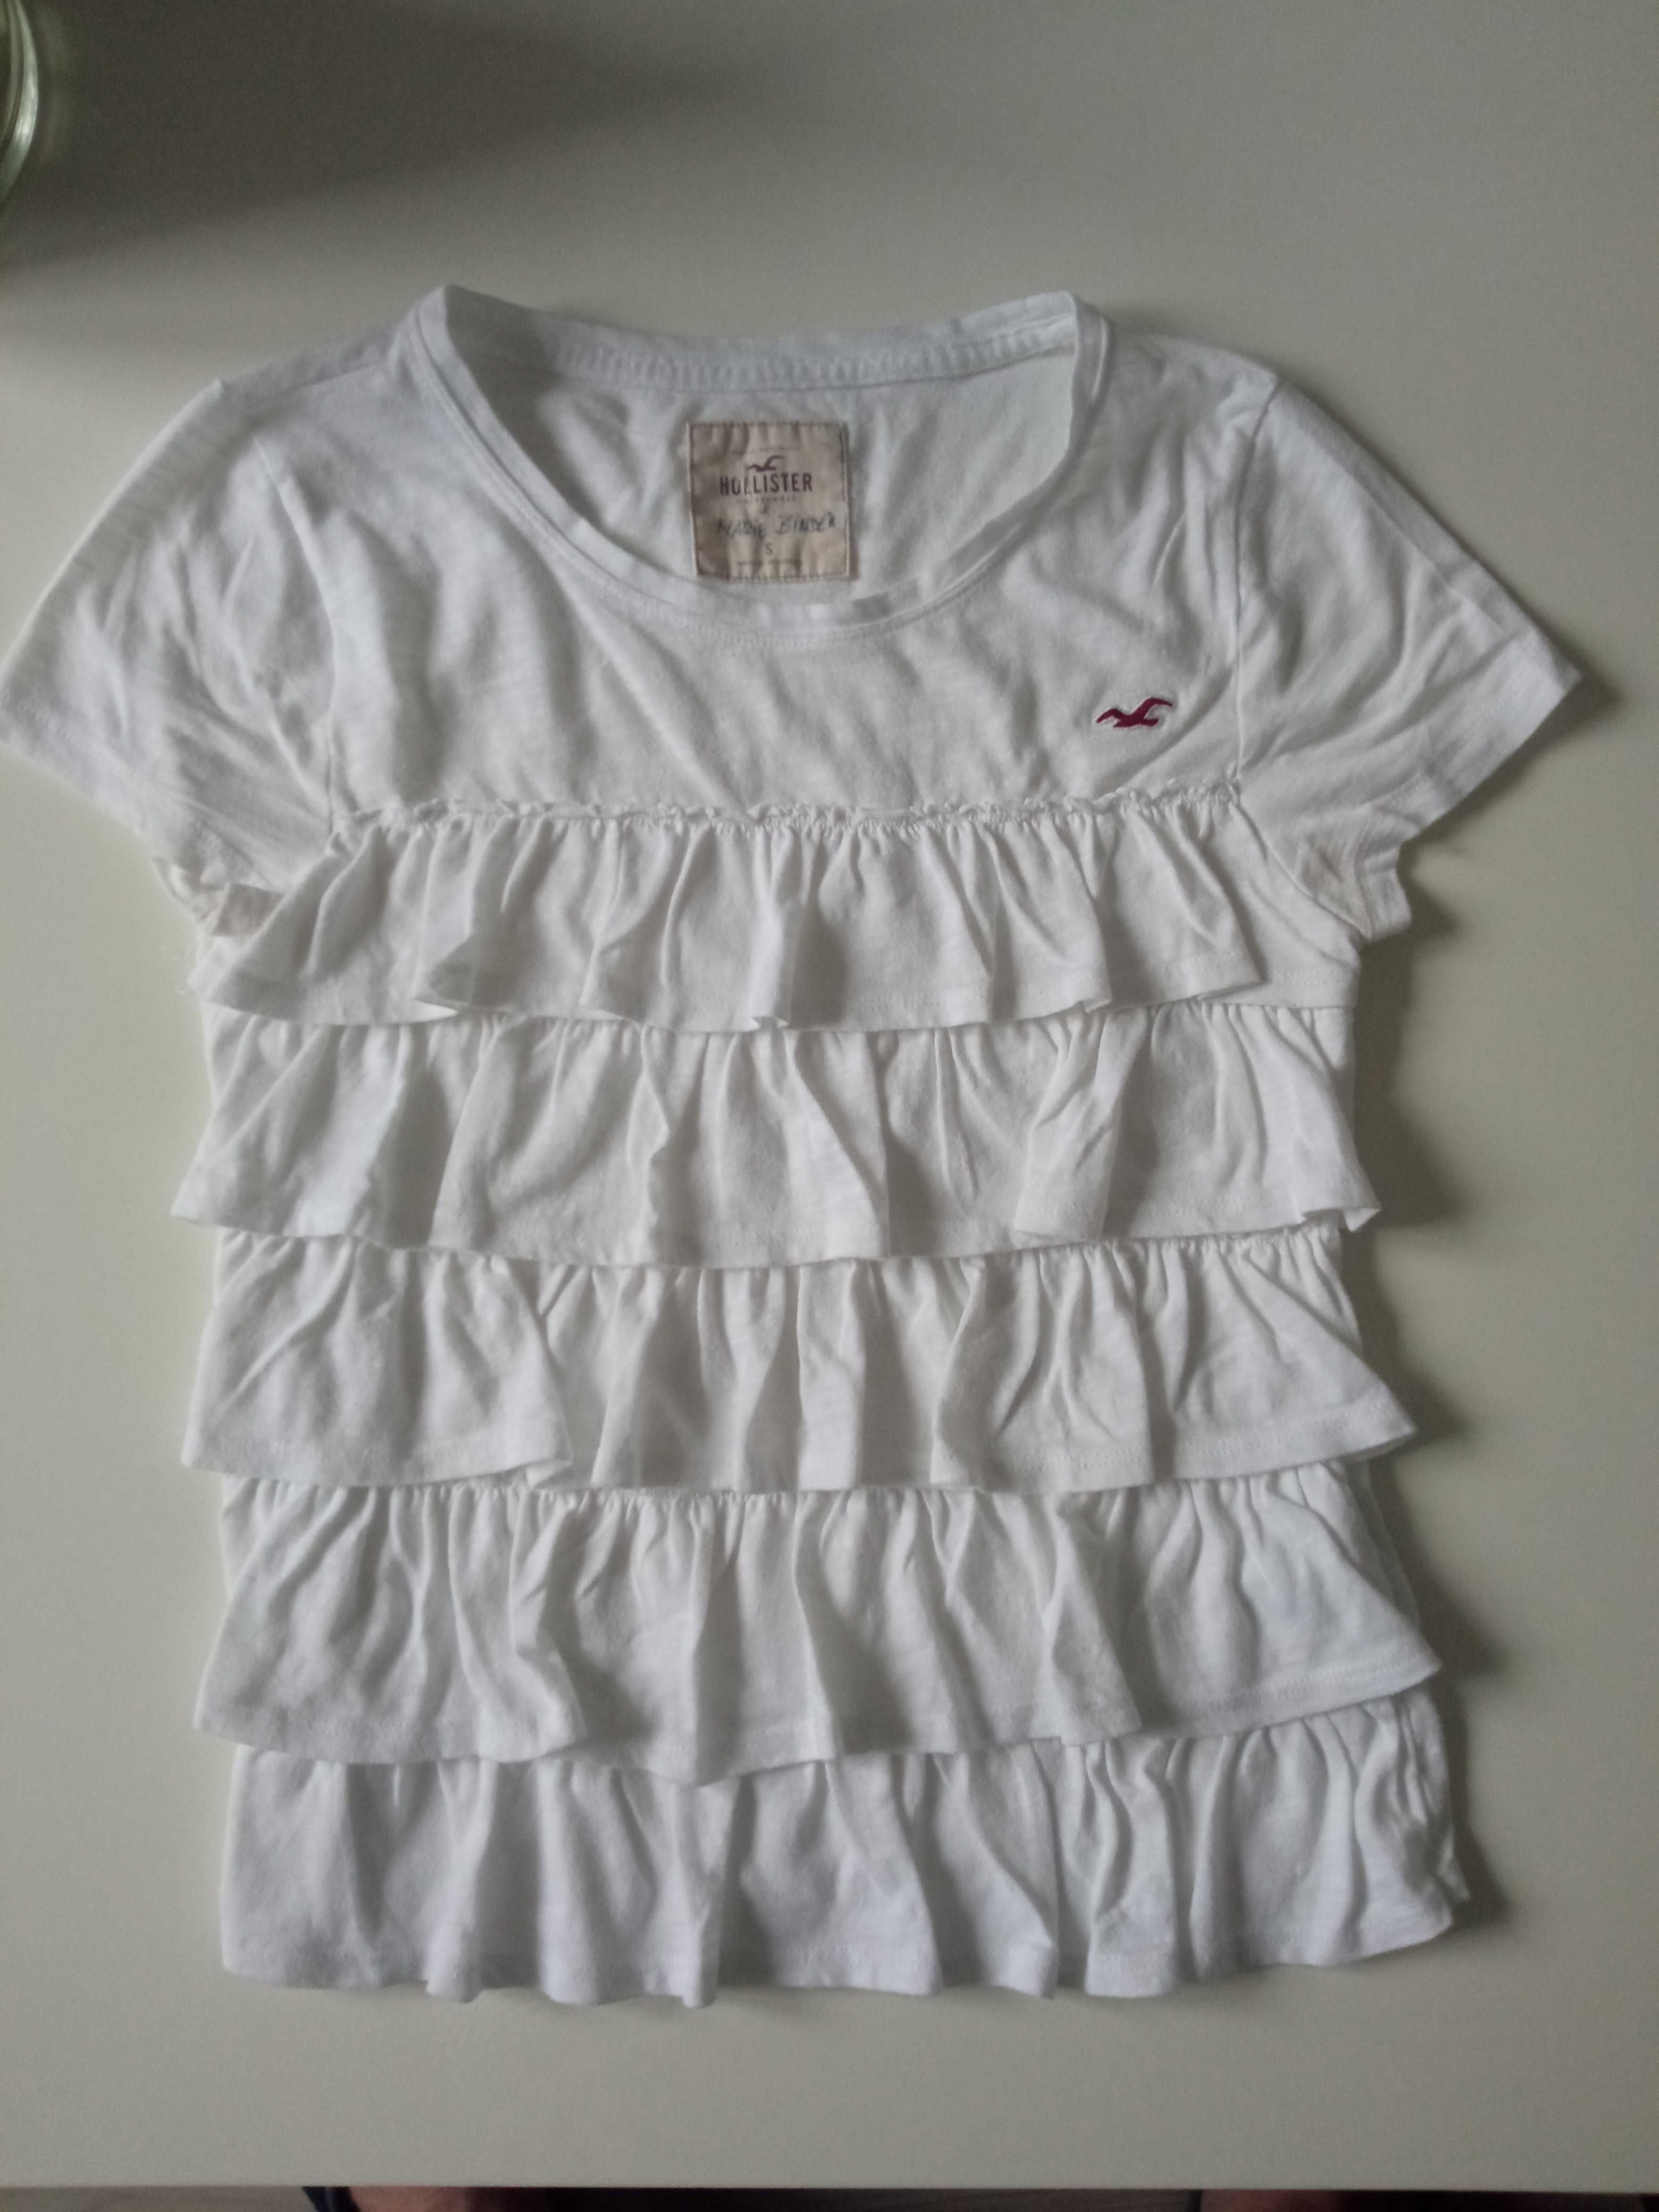 Hollister warstwowa bluzeczka z falbankami biała bawełna r S